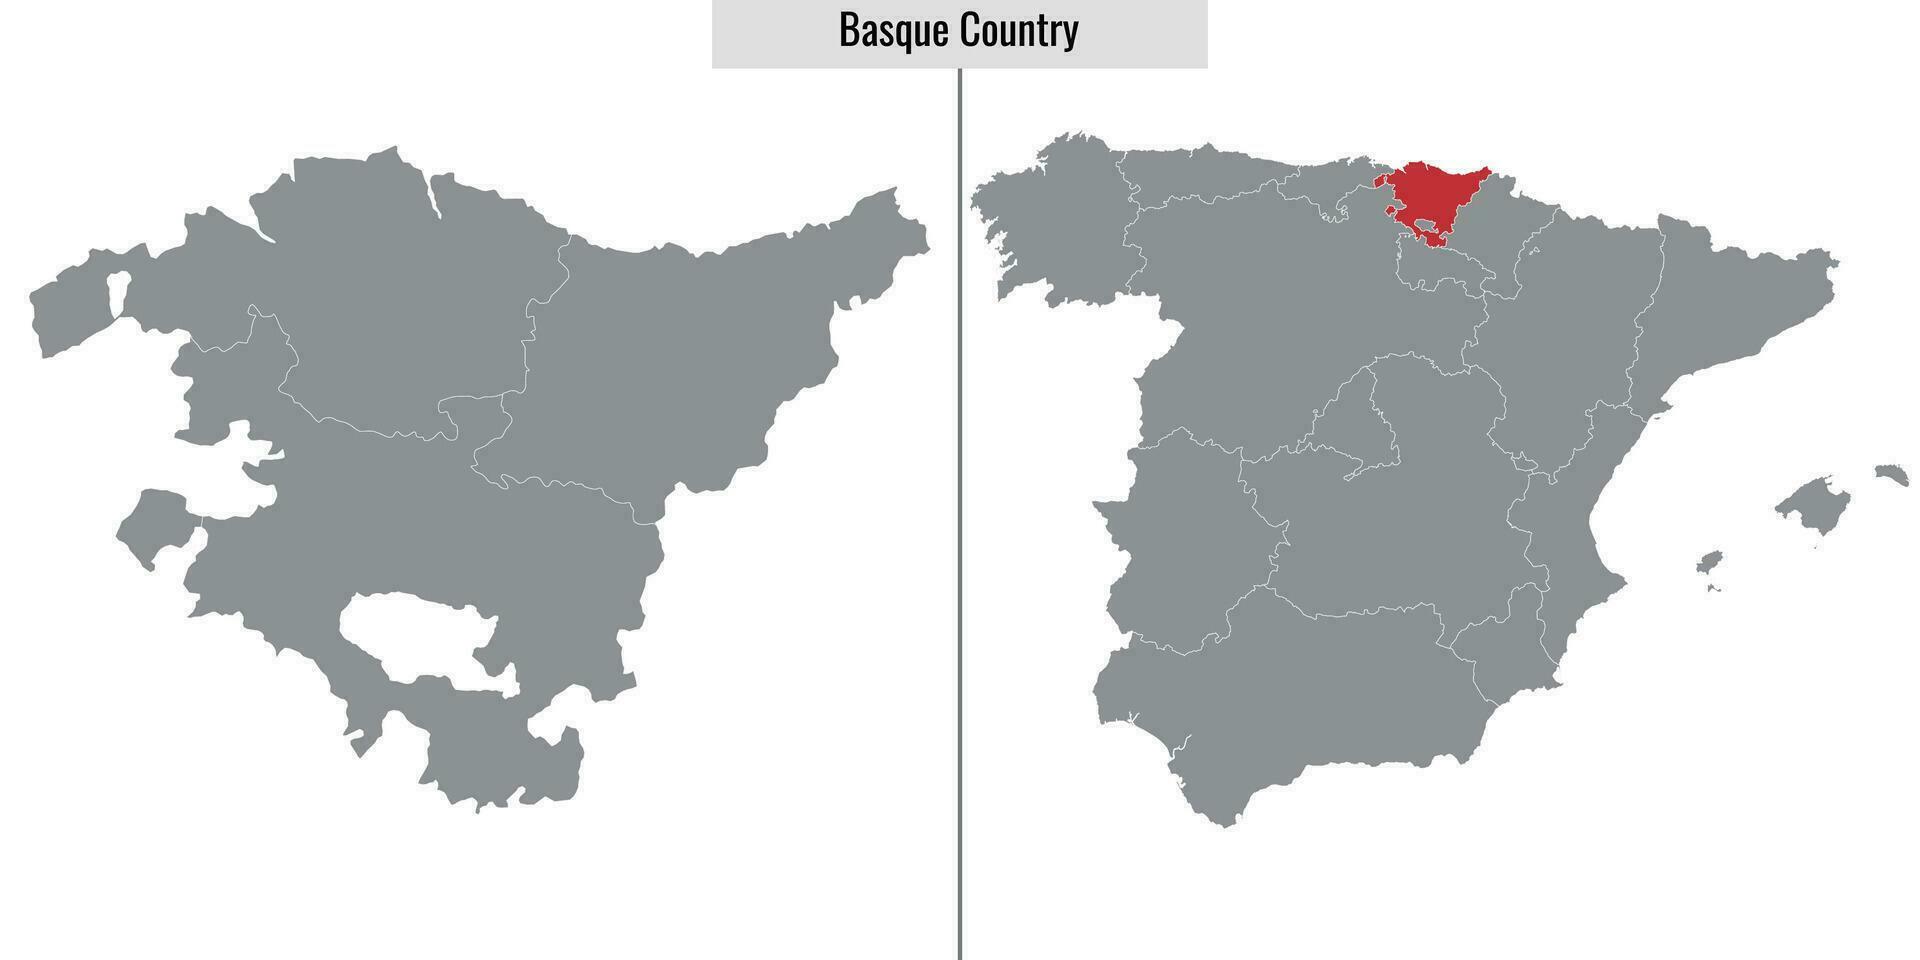 Karte Region von Spanien vektor